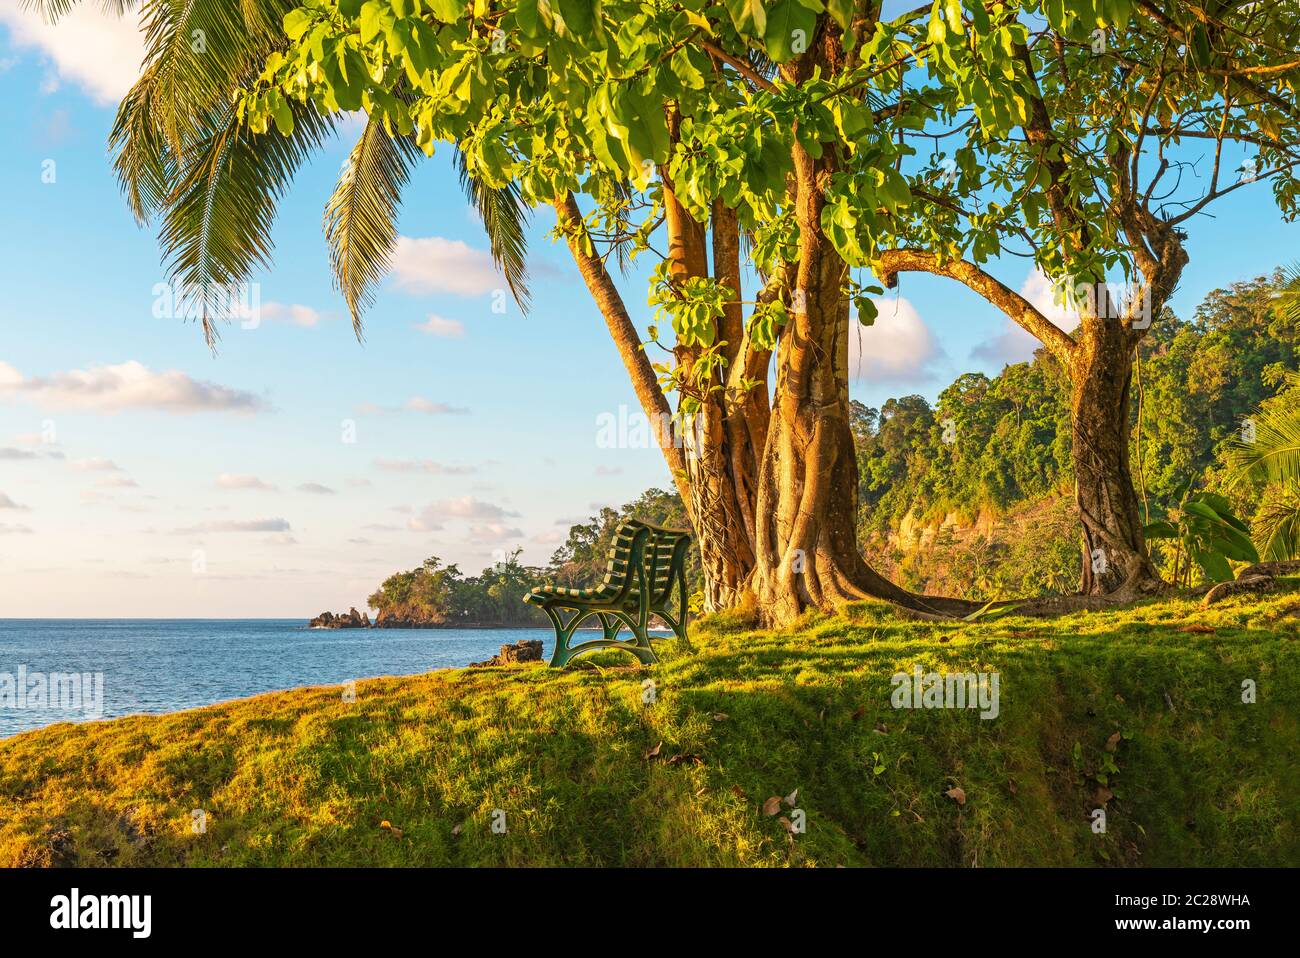 Un banc vide sous un arbre tropical au coucher du soleil devant l'océan Pacifique par la forêt tropicale humide, le parc national du Corcovado, la péninsule d'Osa, Costa Rica. Banque D'Images